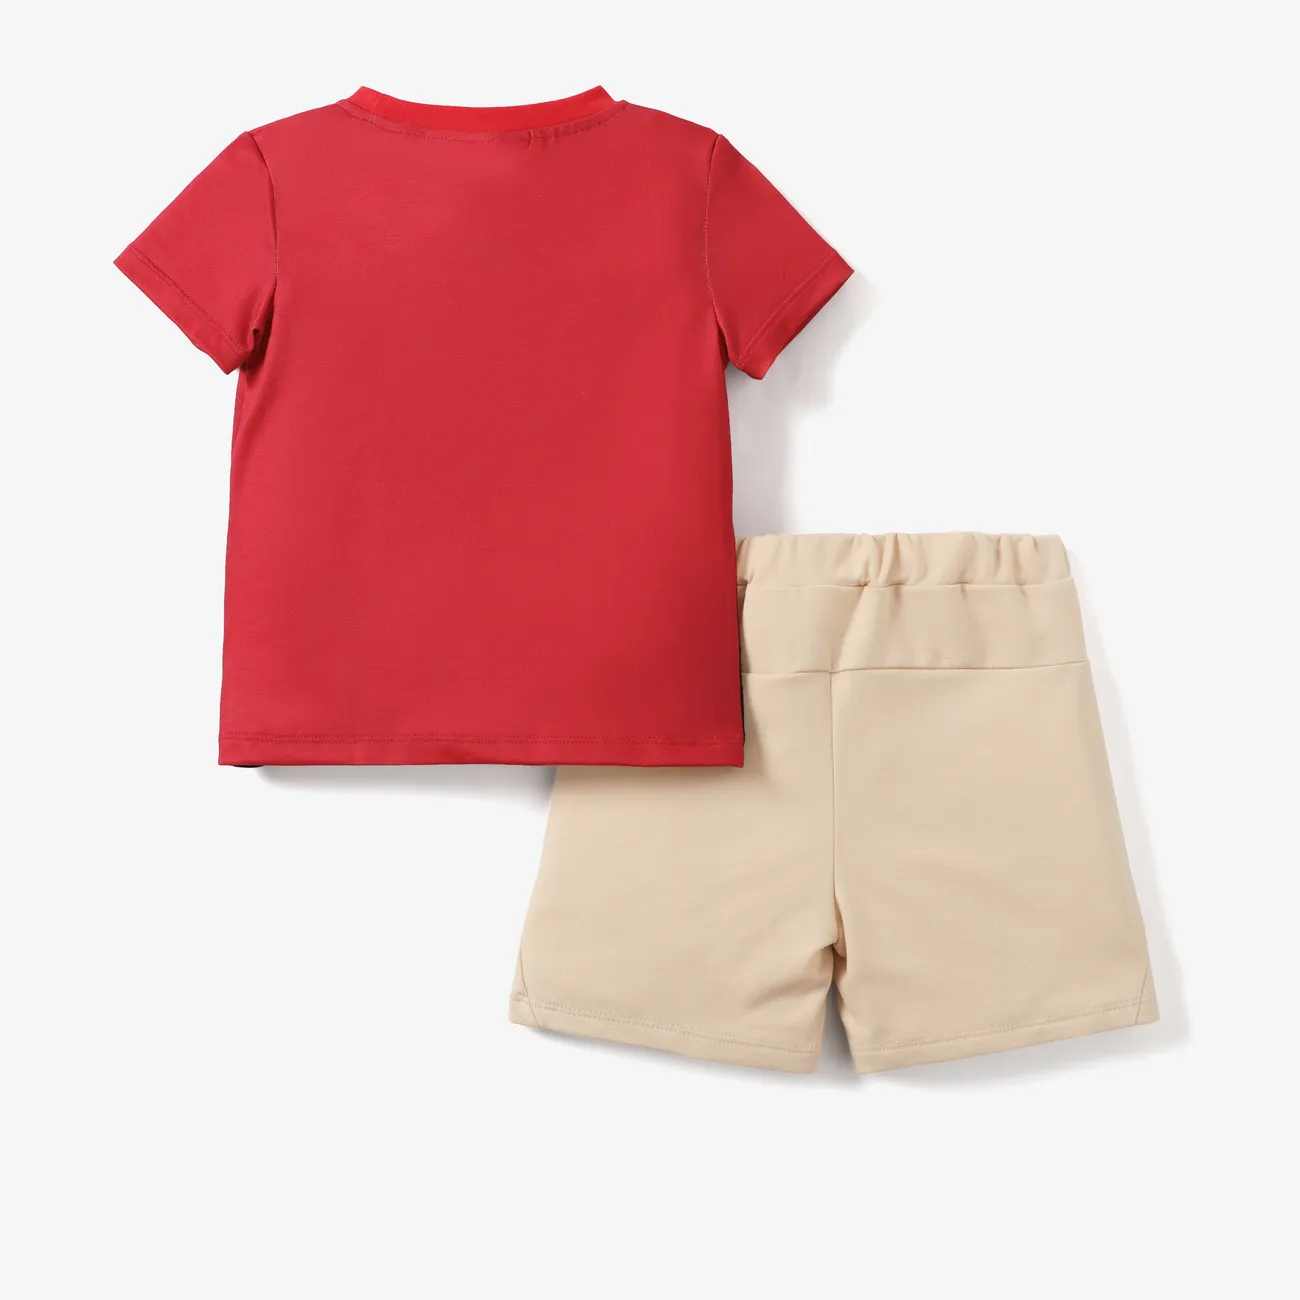 Disney König der Löwen 2 Stück Kleinkinder Jungen Kindlich T-Shirt-Sets rot big image 1